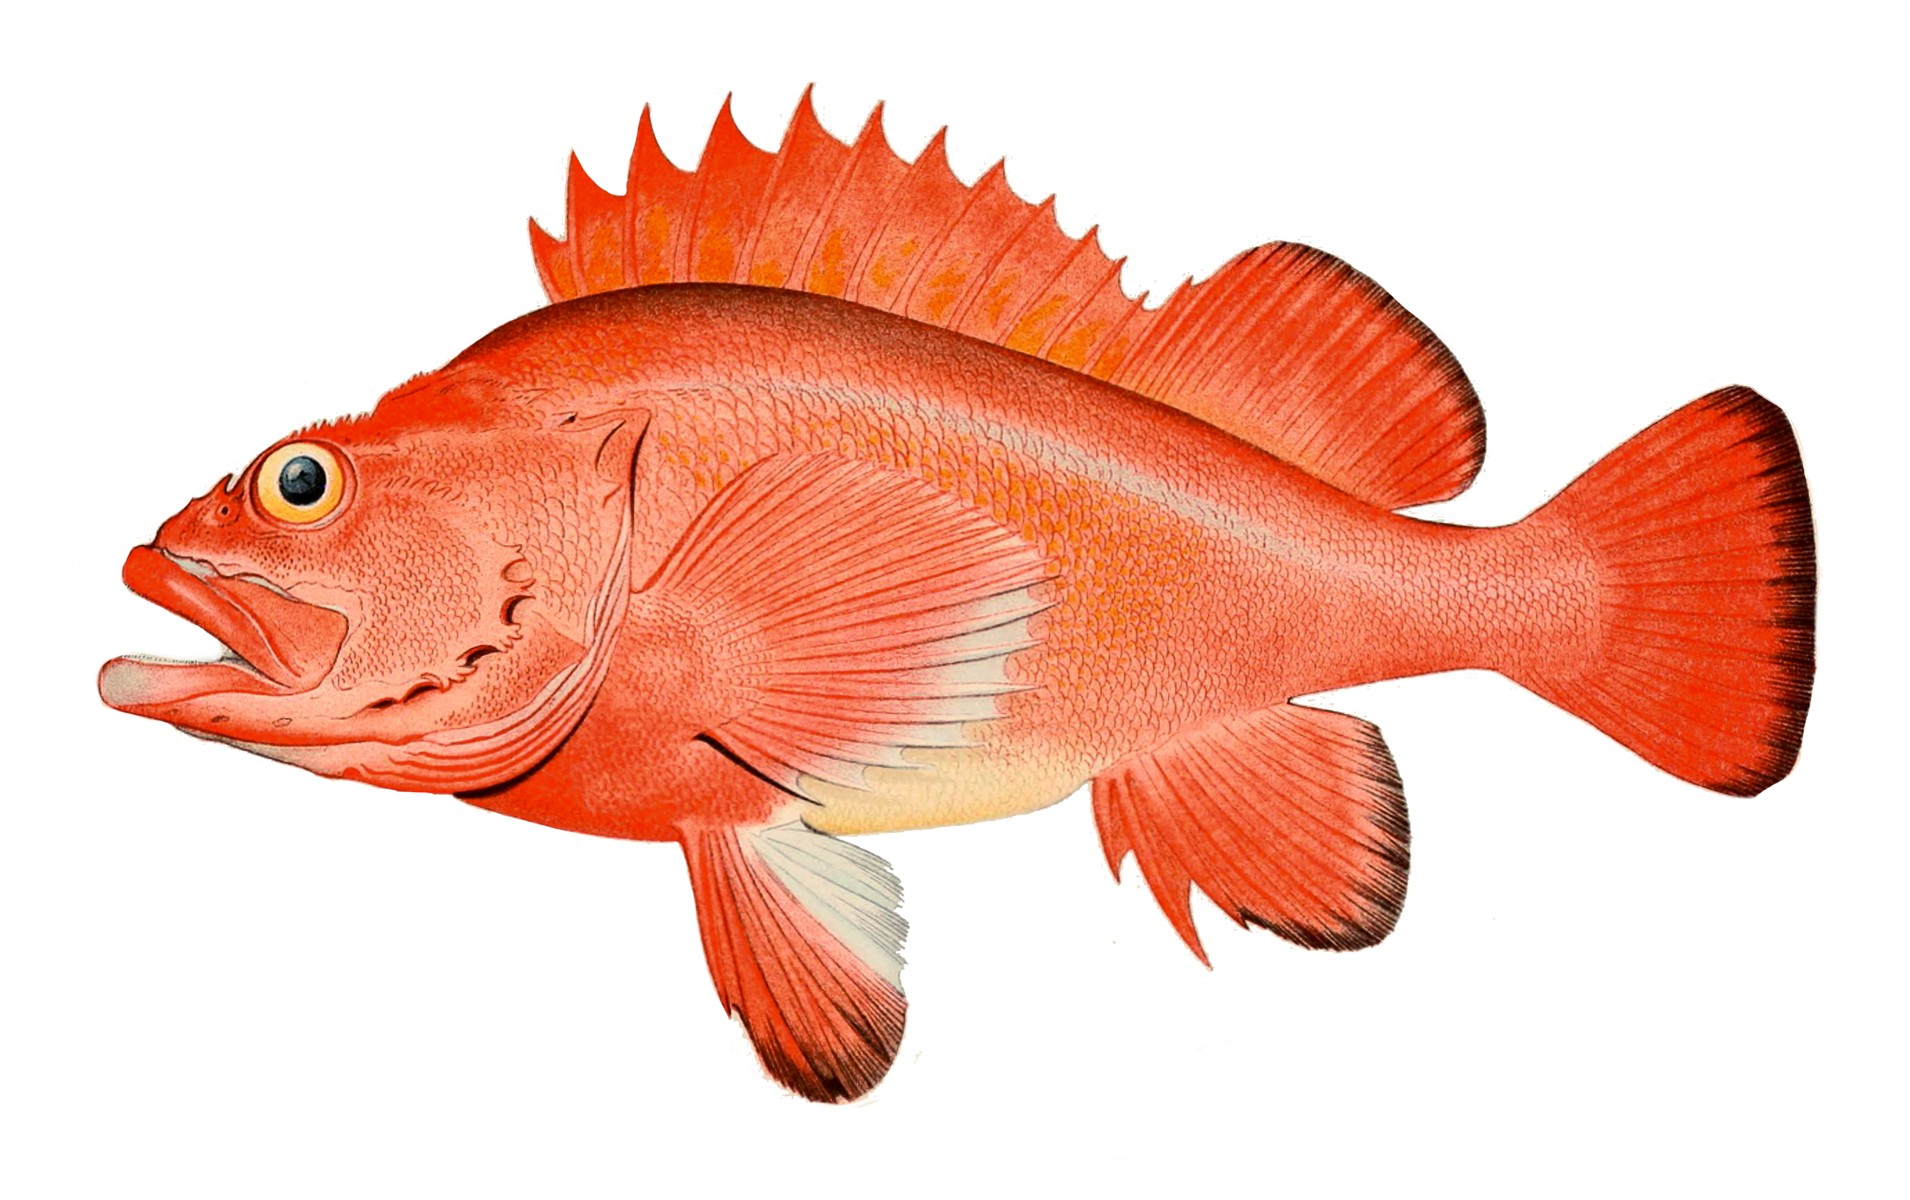 200년 이상 산다고 알려진 한볼락(Sebastes aleutianus)입니다. 출처: Bulletin of the United States Fish Commission